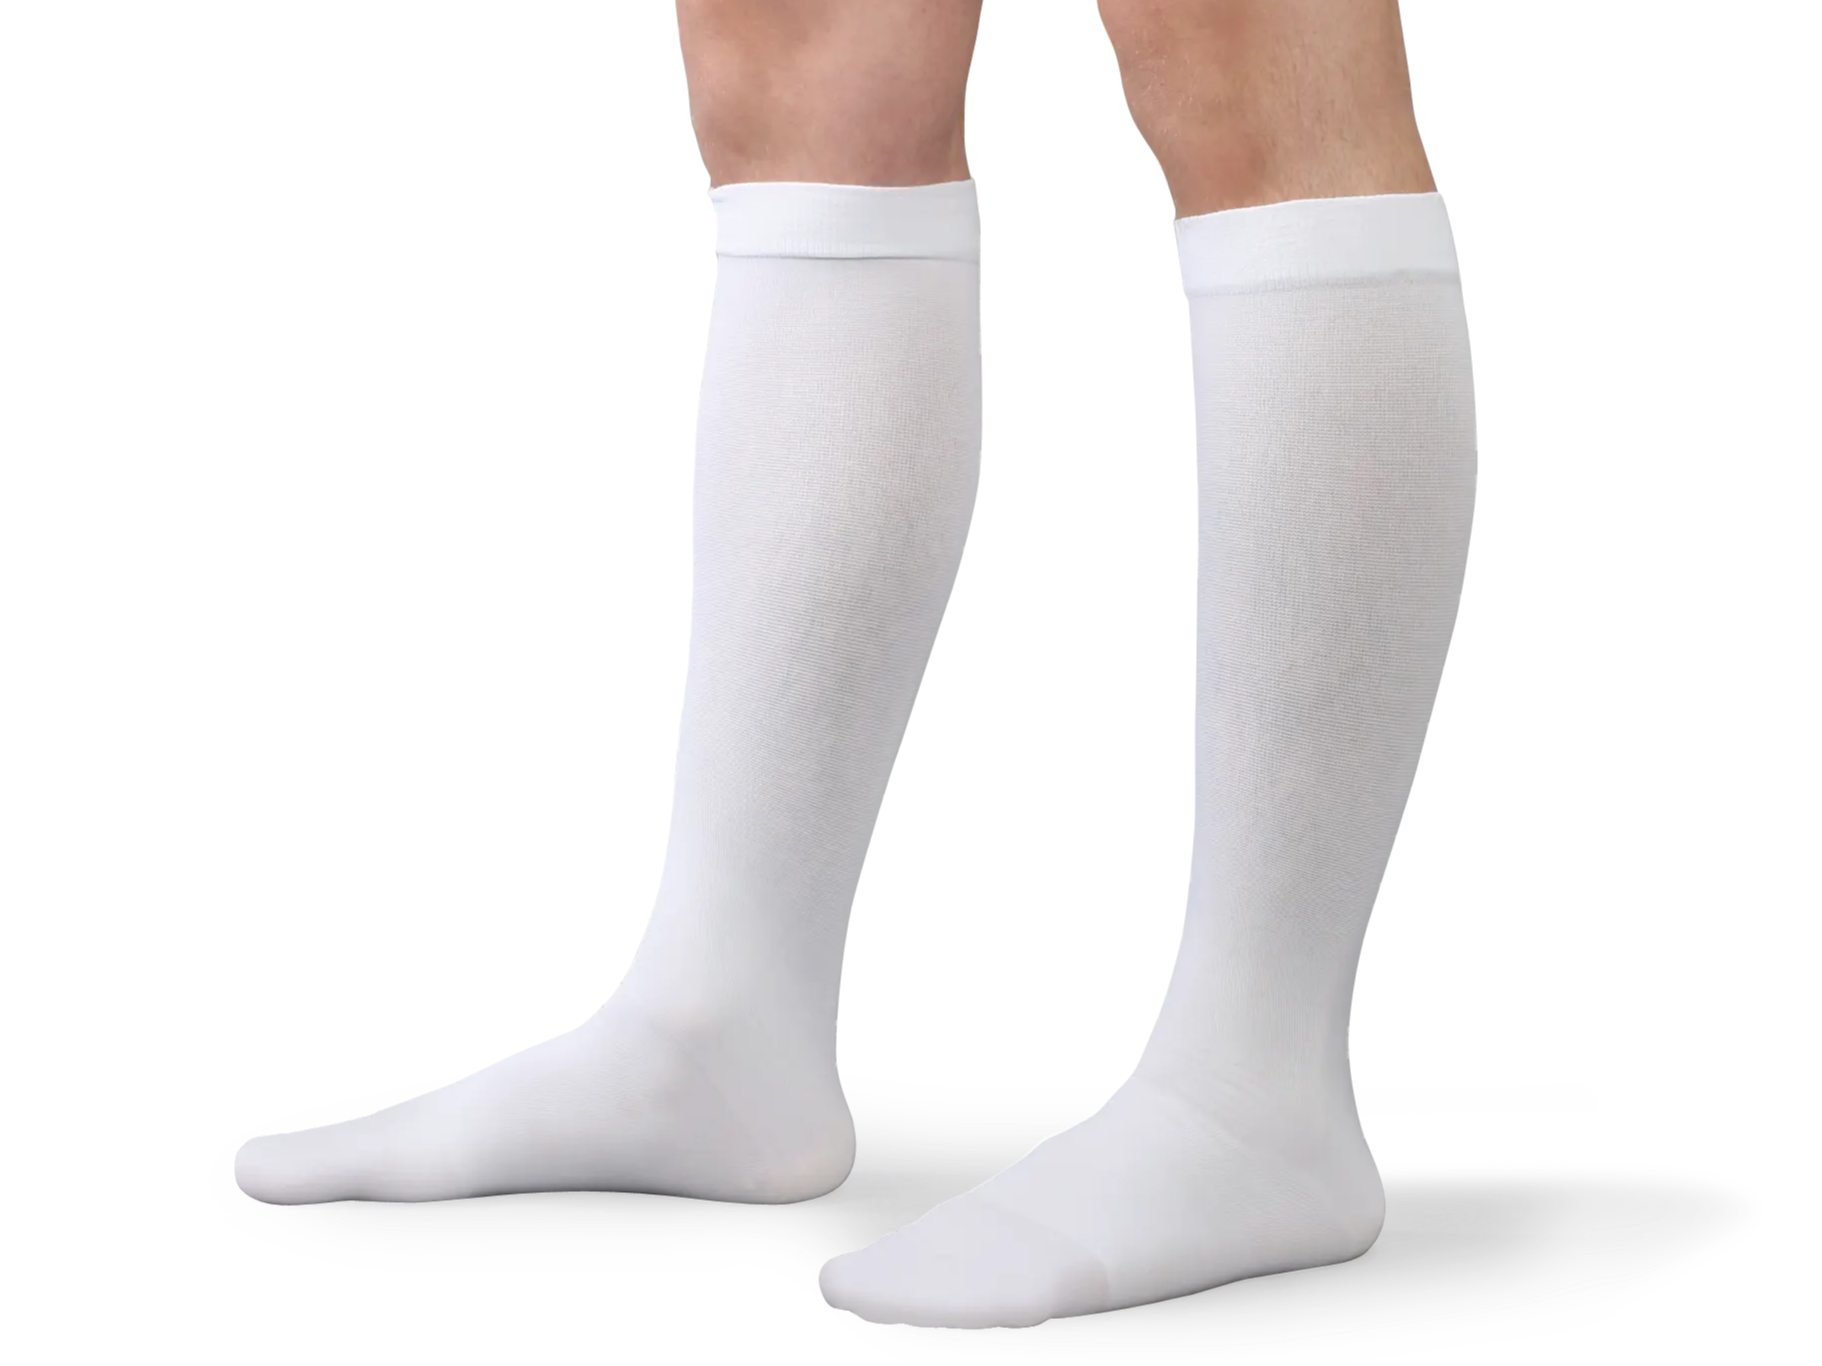 Person wearing knee high anti-embolism stockings